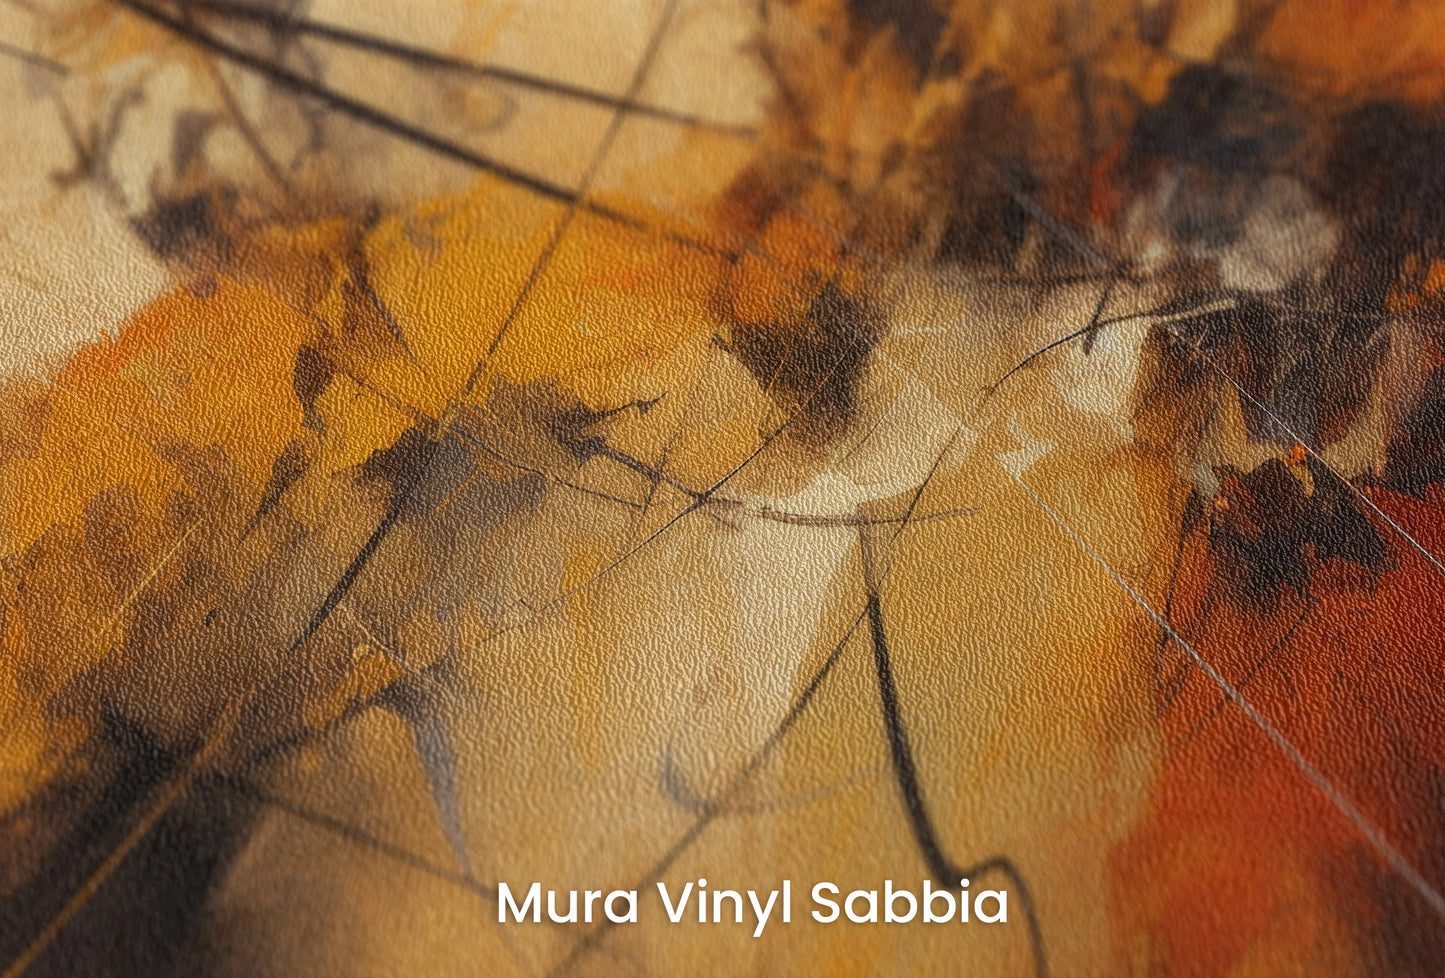 Zbliżenie na artystyczną fototapetę o nazwie Dynamic Essence na podłożu Mura Vinyl Sabbia struktura grubego ziarna piasku.